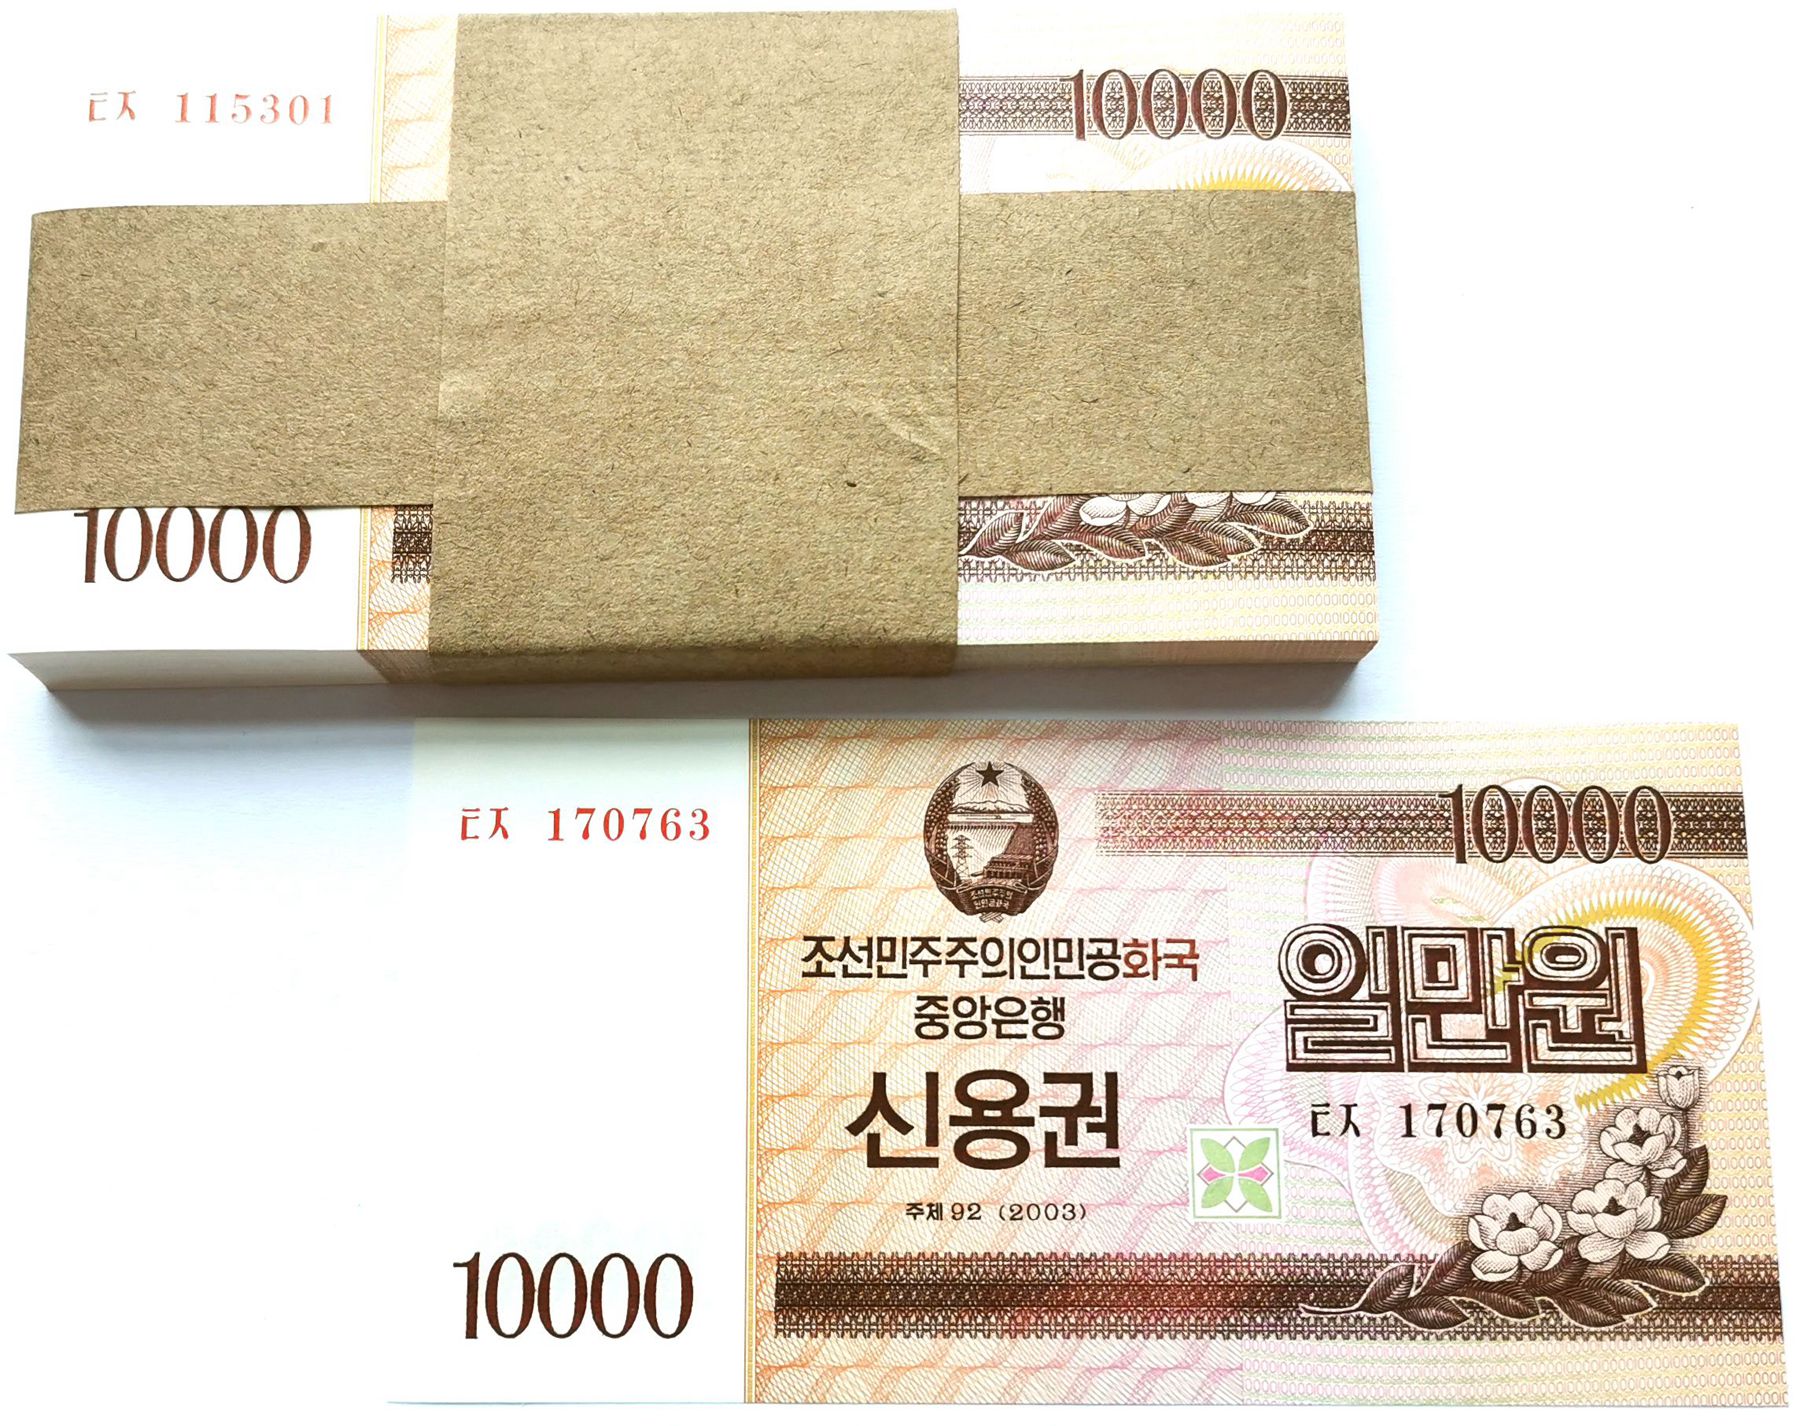 L1252, Korea 4% Cashier's Cheque (Banknotes) 10000 Wons, 100 Pcs, 2003